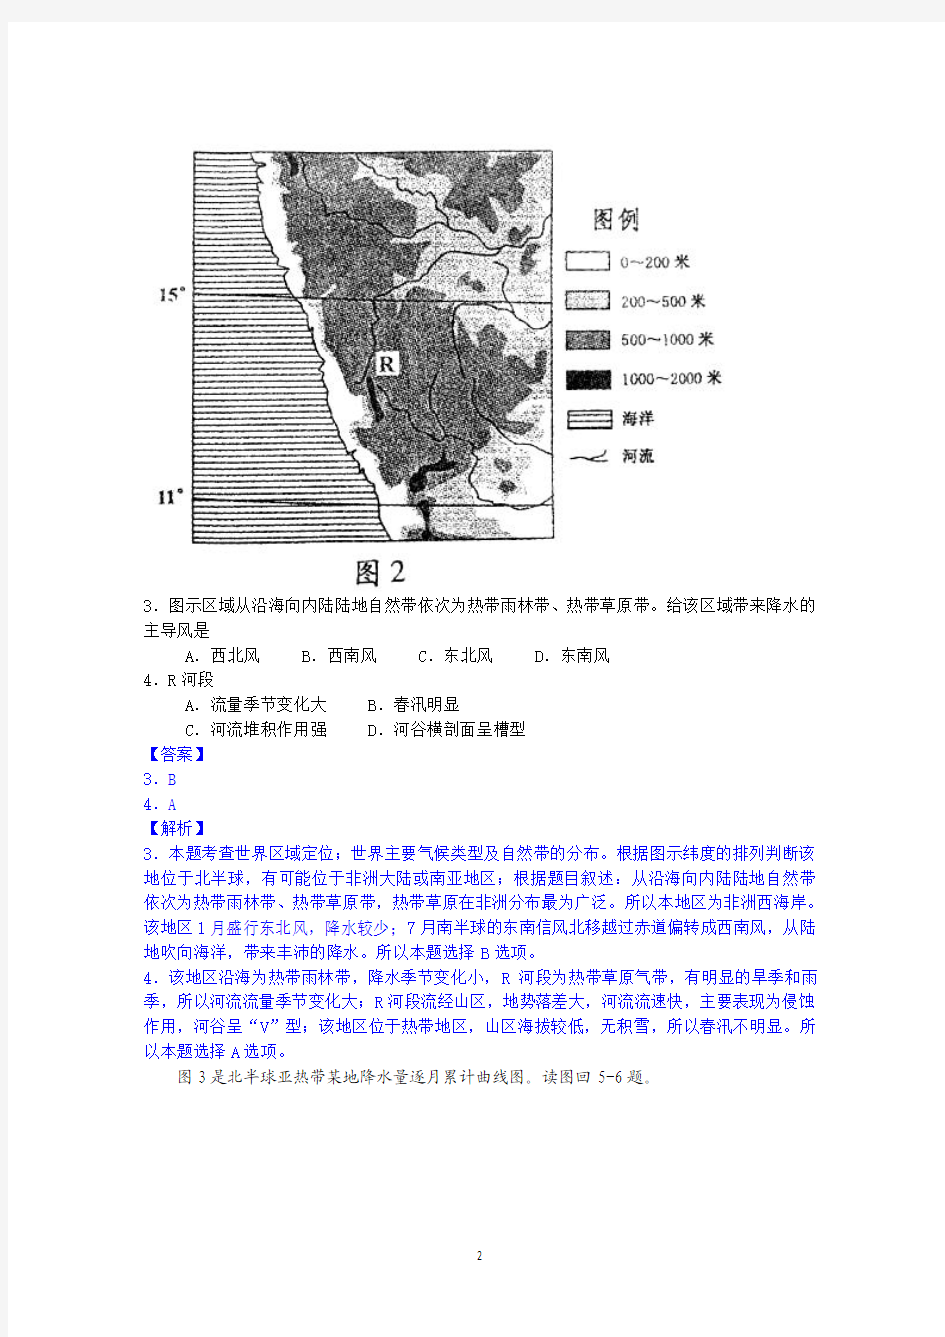 2013年高考真题——文综地理(四川卷)解析版